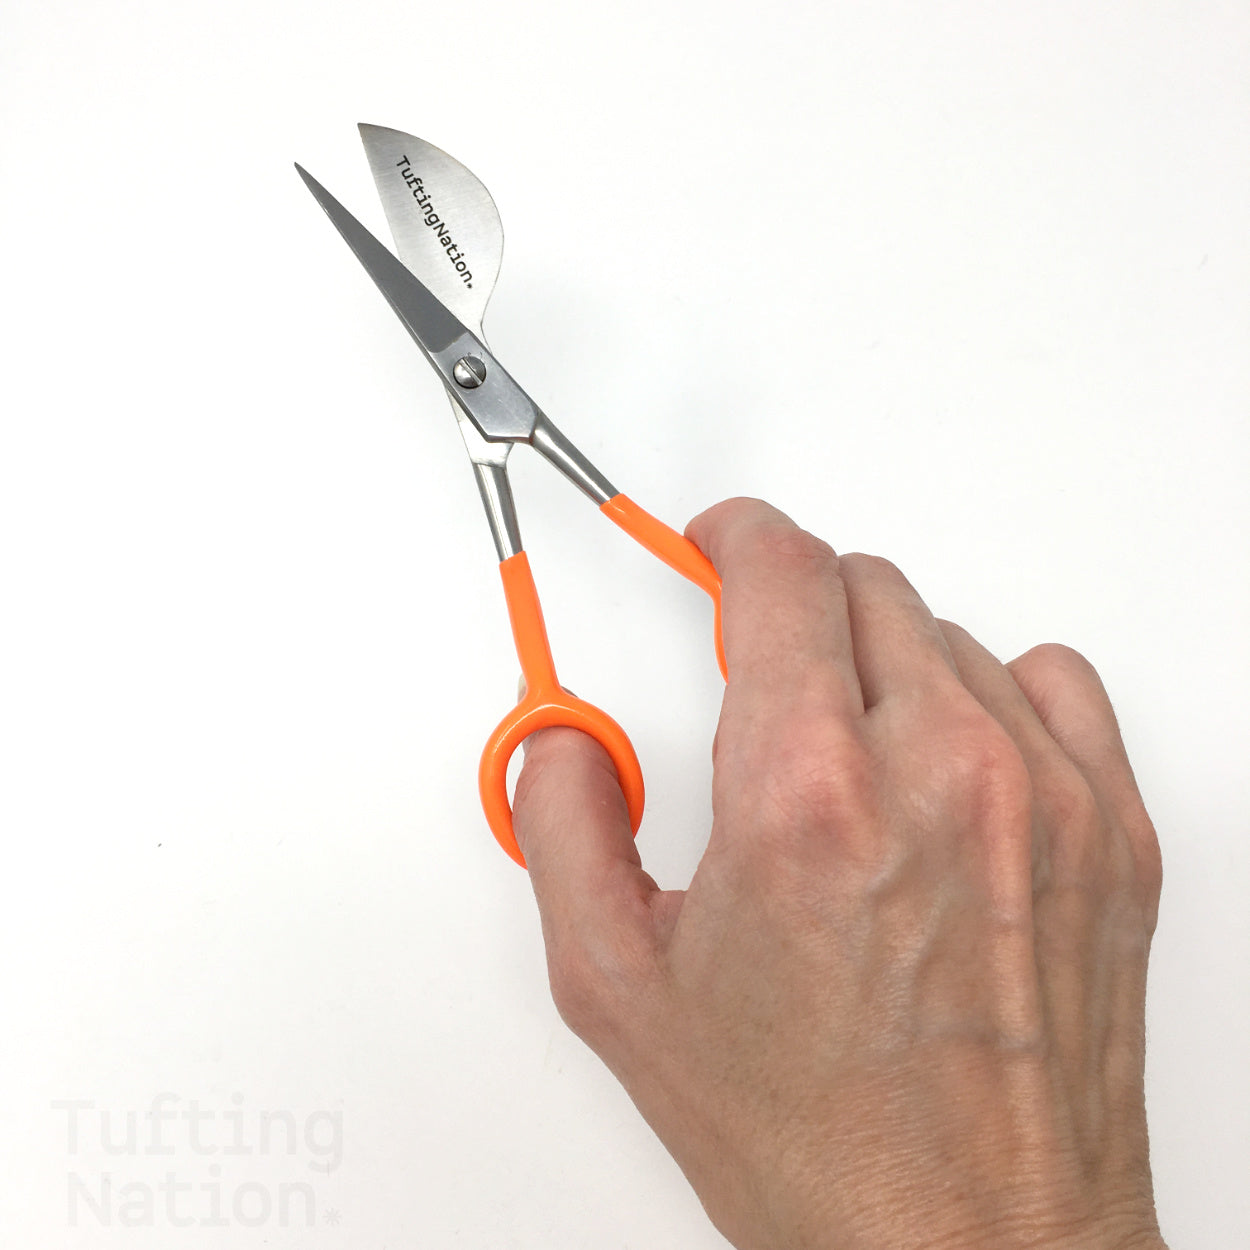 6 Duckbill Tufting Scissors